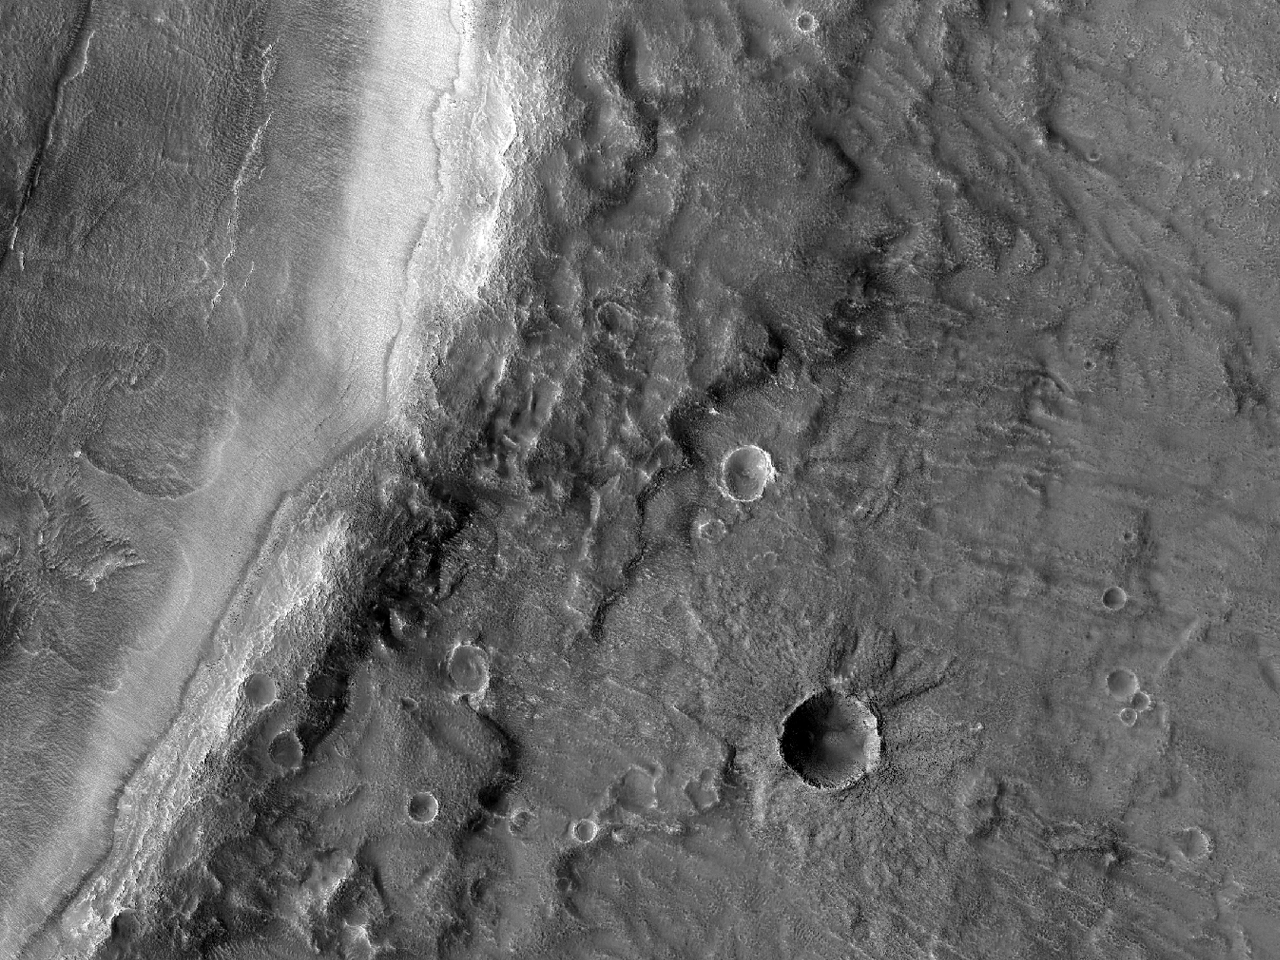 Regione sul bordo di un cratere in Acidalia Planitia